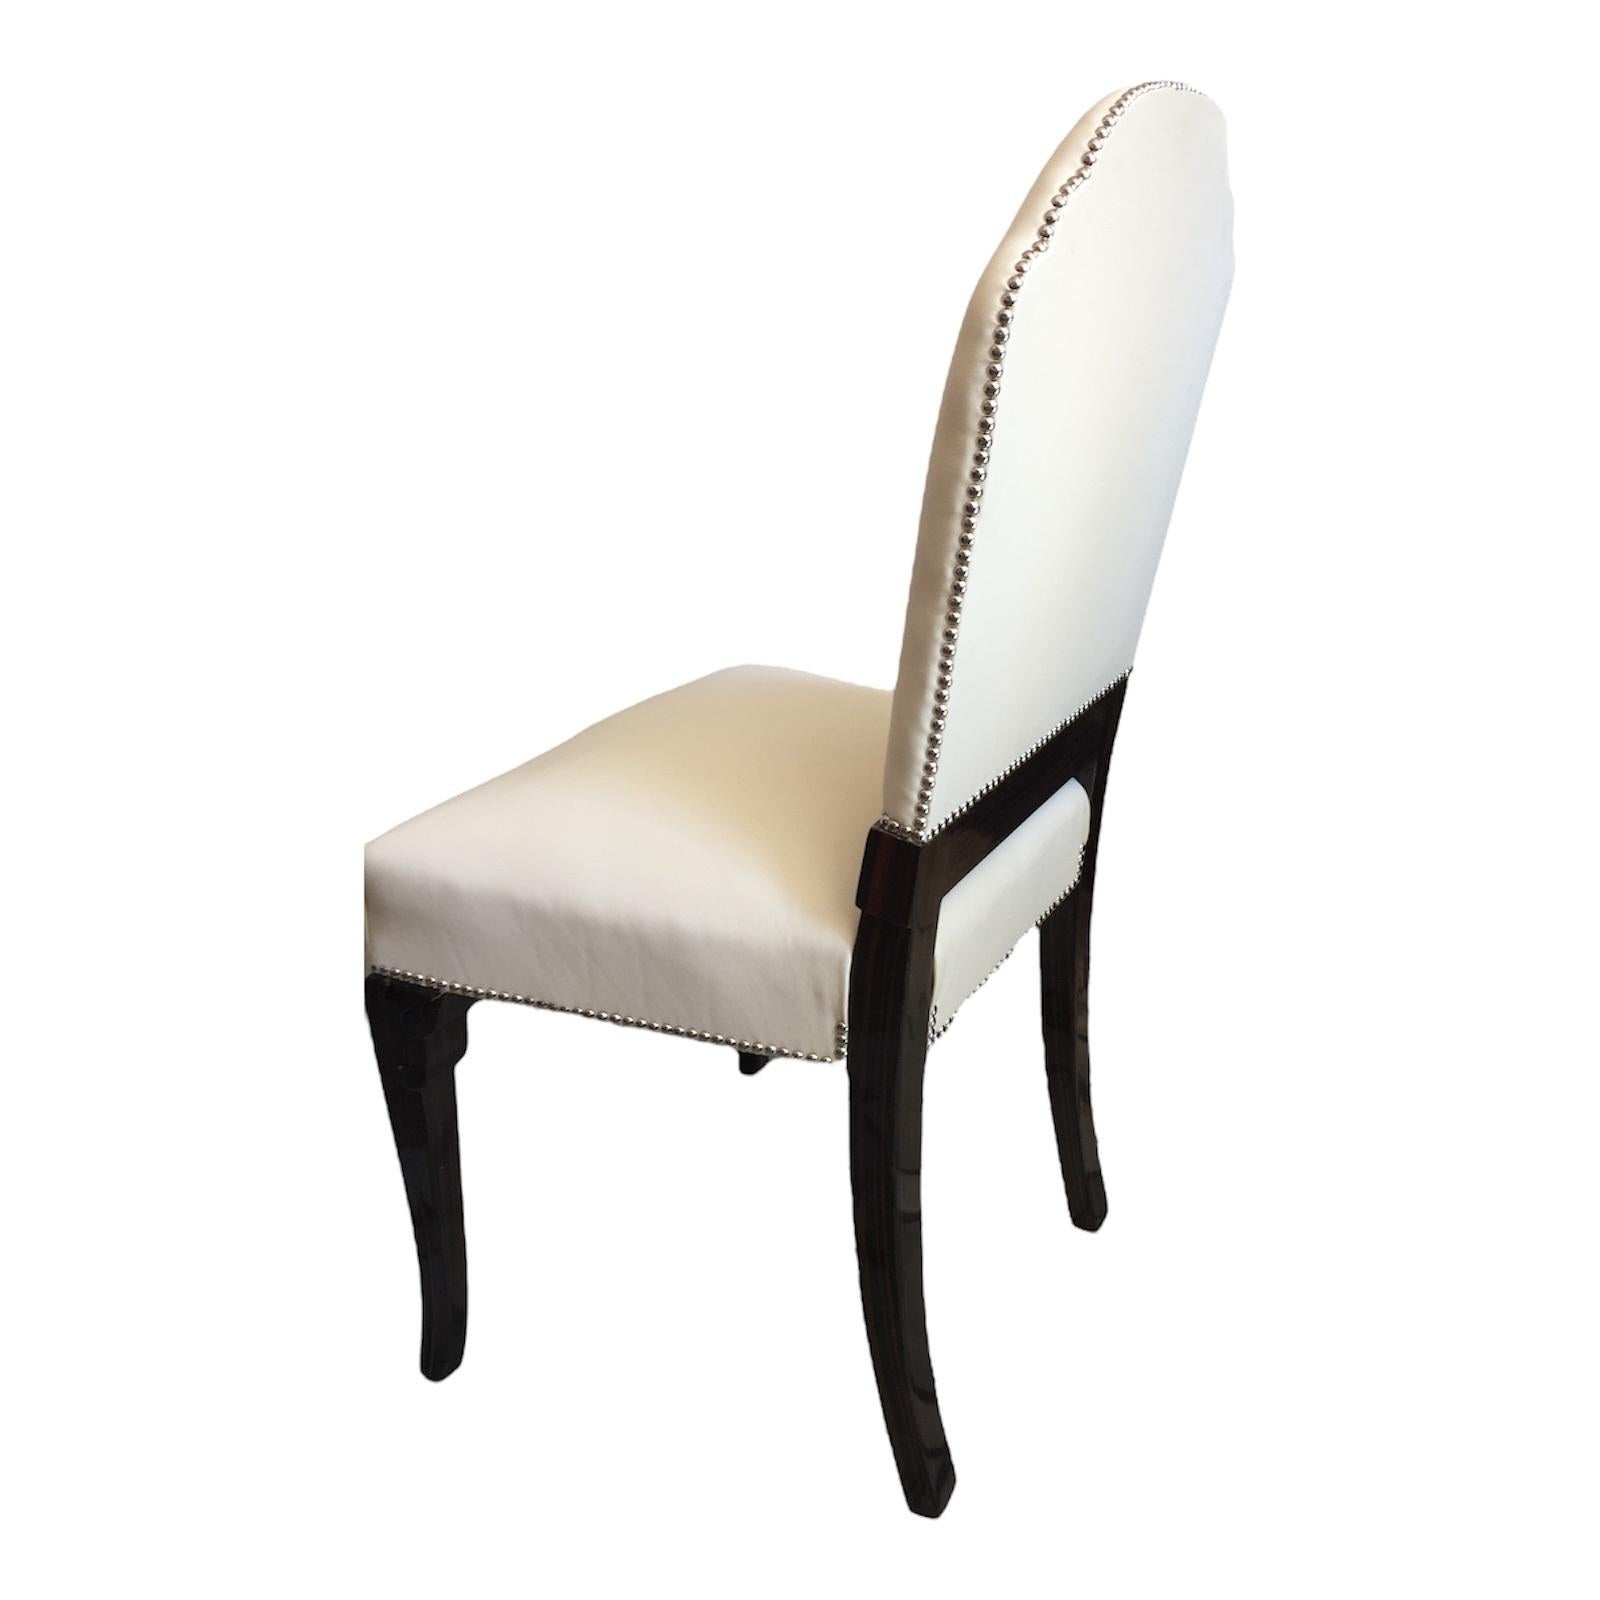 6 chaises en cuir et bois.
Art déco
Le dossier de la chaise forme le mot Munich
Année 1900
Pays : Allemand
Matériaux : bois et cuir
6 chaises élégantes et sophistiquées.
Vous voulez vivre dans l'âge d'or, ce sont les chaises dont votre projet a